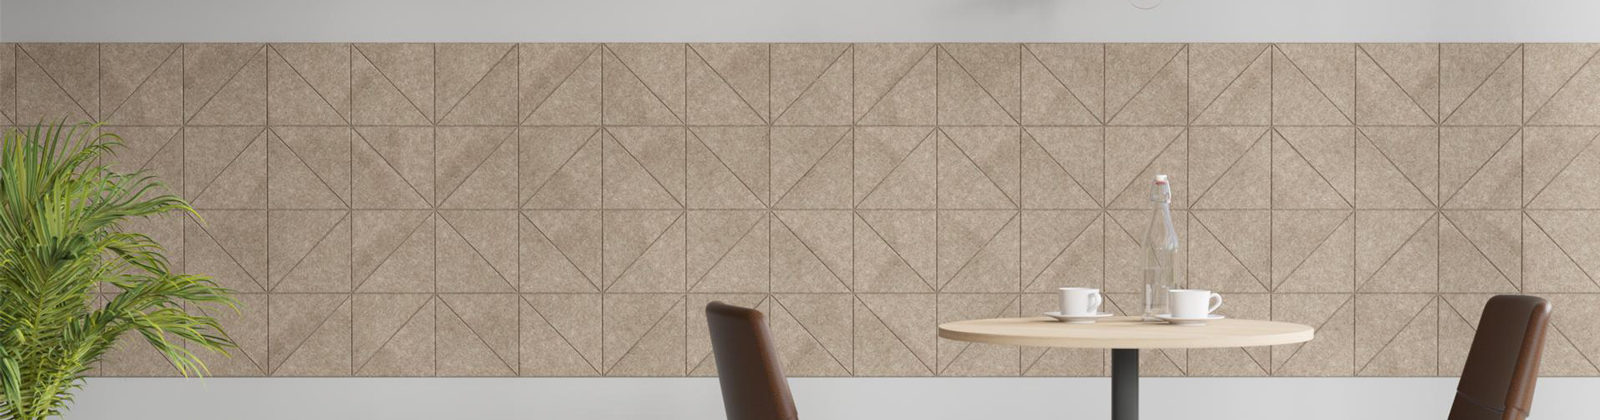 Acoustic Artwork tiles